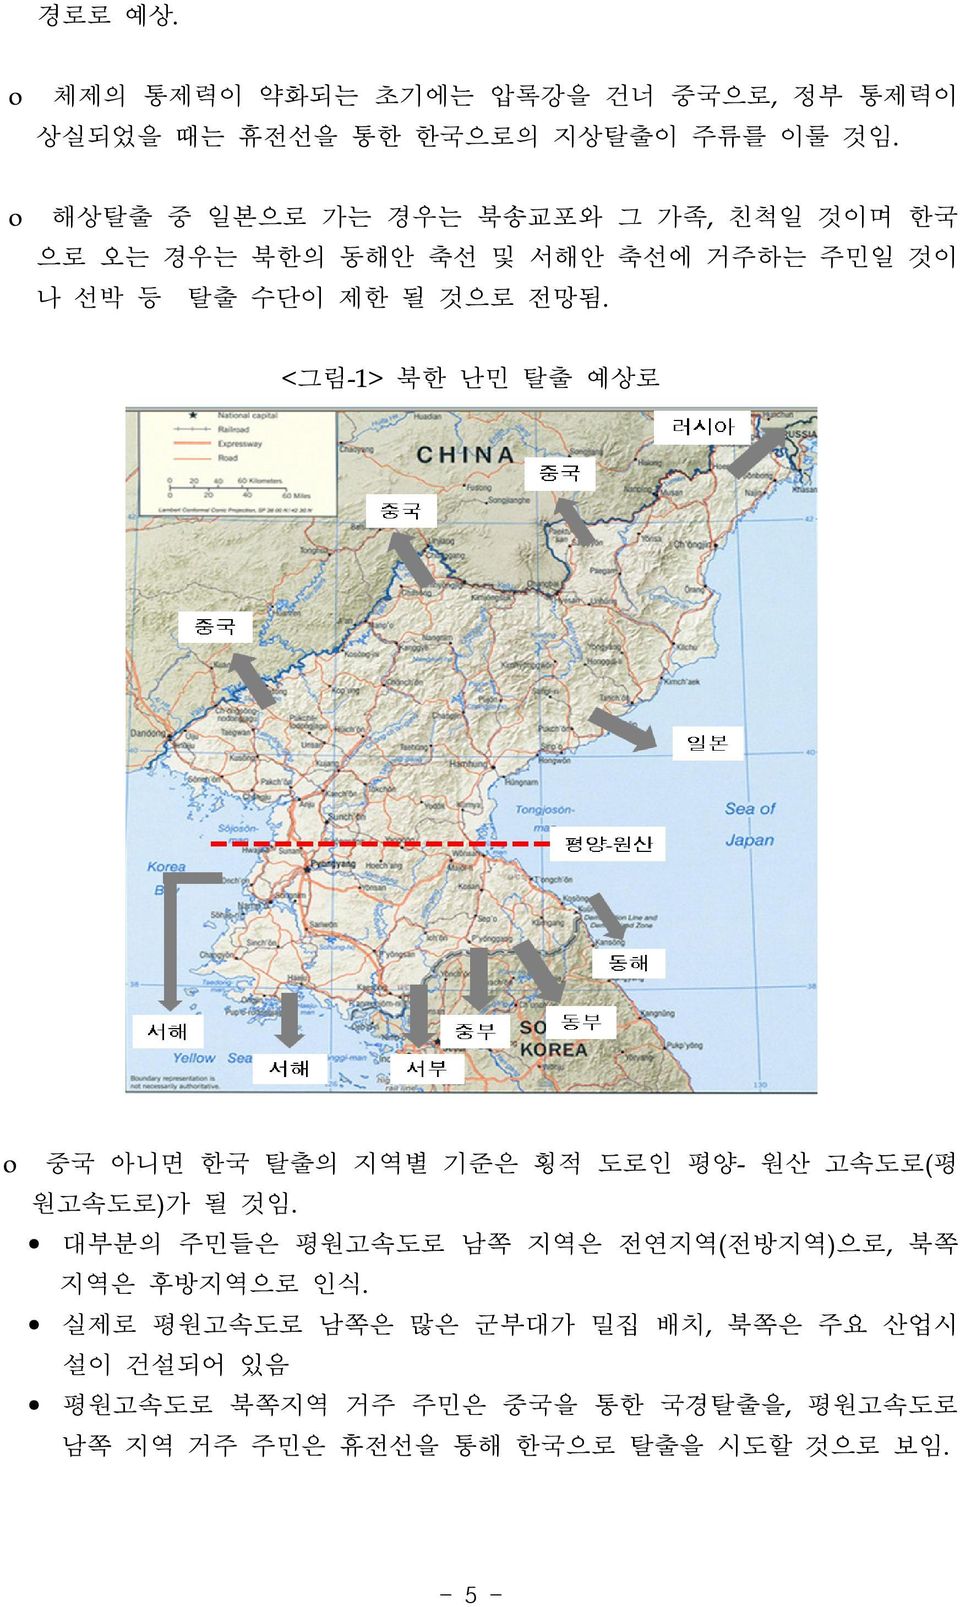 <그림-1> o 북한 난민 탈출 예상로 중국 아니면 한국 탈출의 지역별 기준은 횡적 도로인 평양- 원산 고속도로(평 원고속도로)가 될 것임.